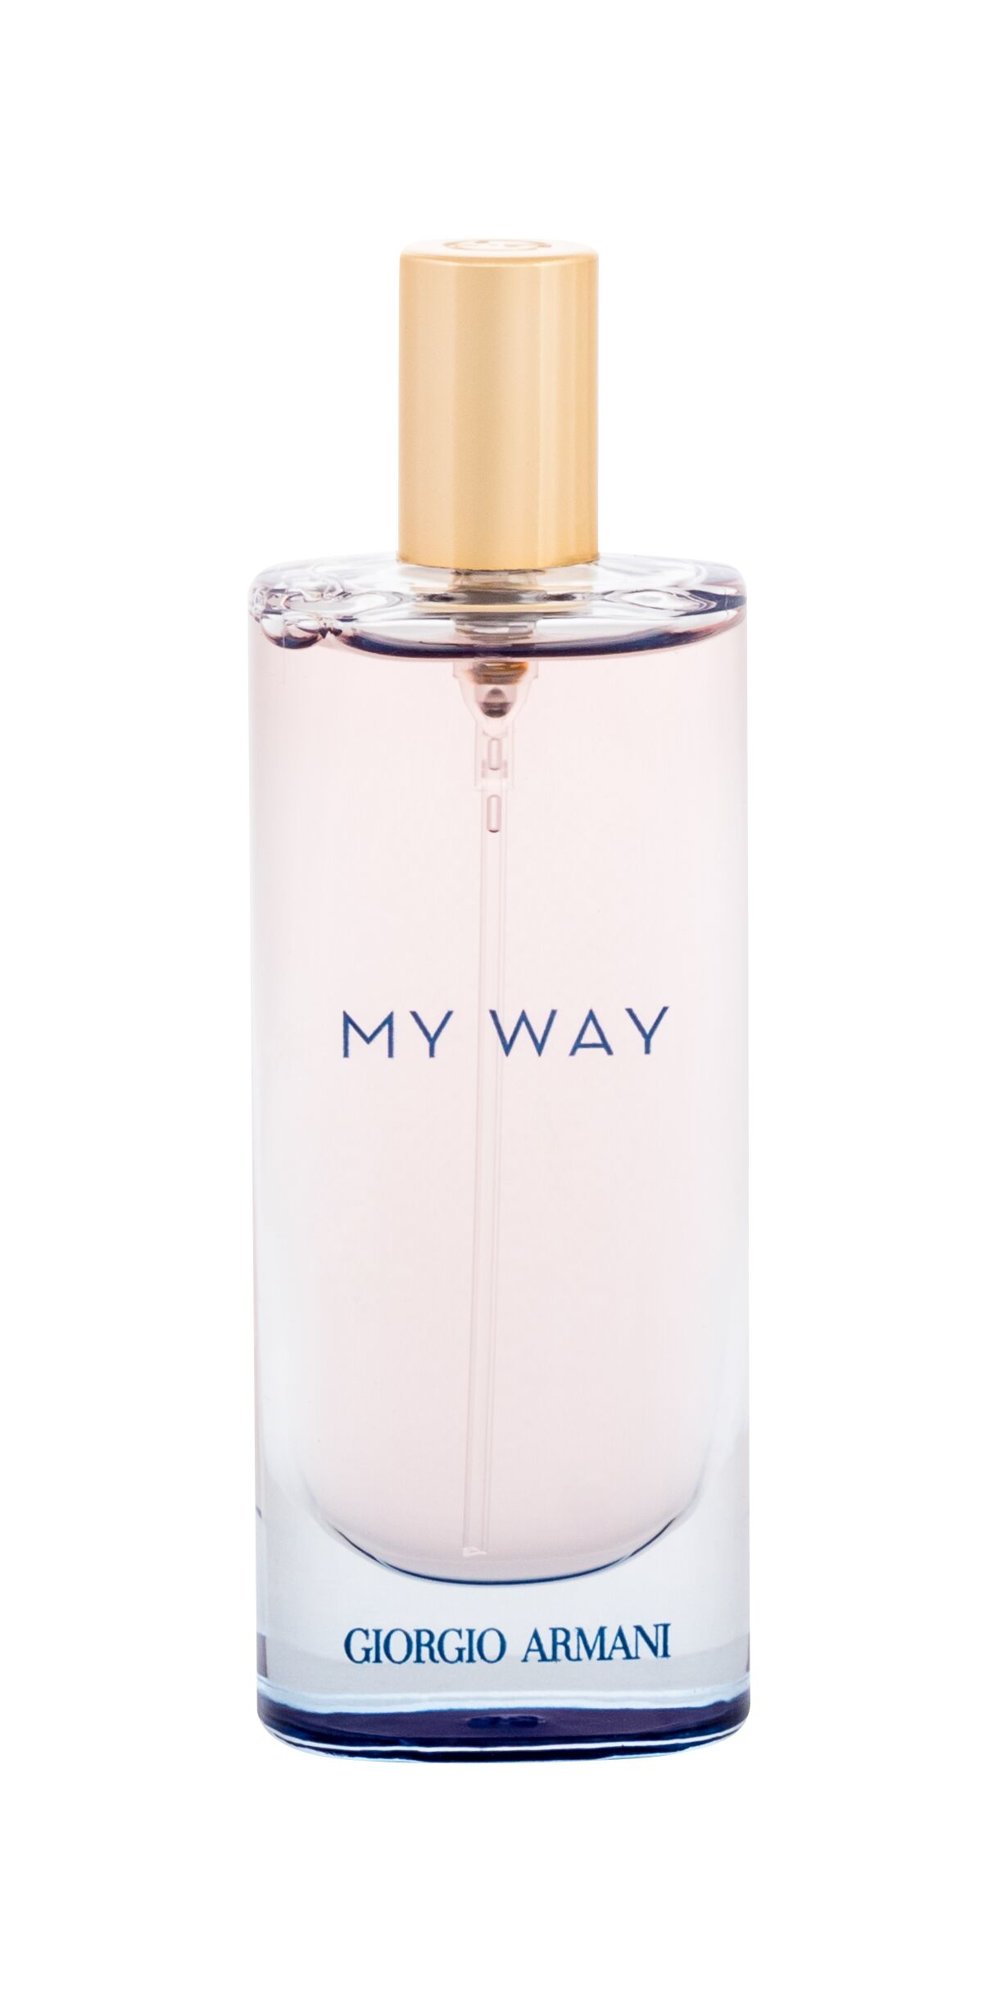 Giorgio Armani My Way Intense, Parfumovaná voda 15ml